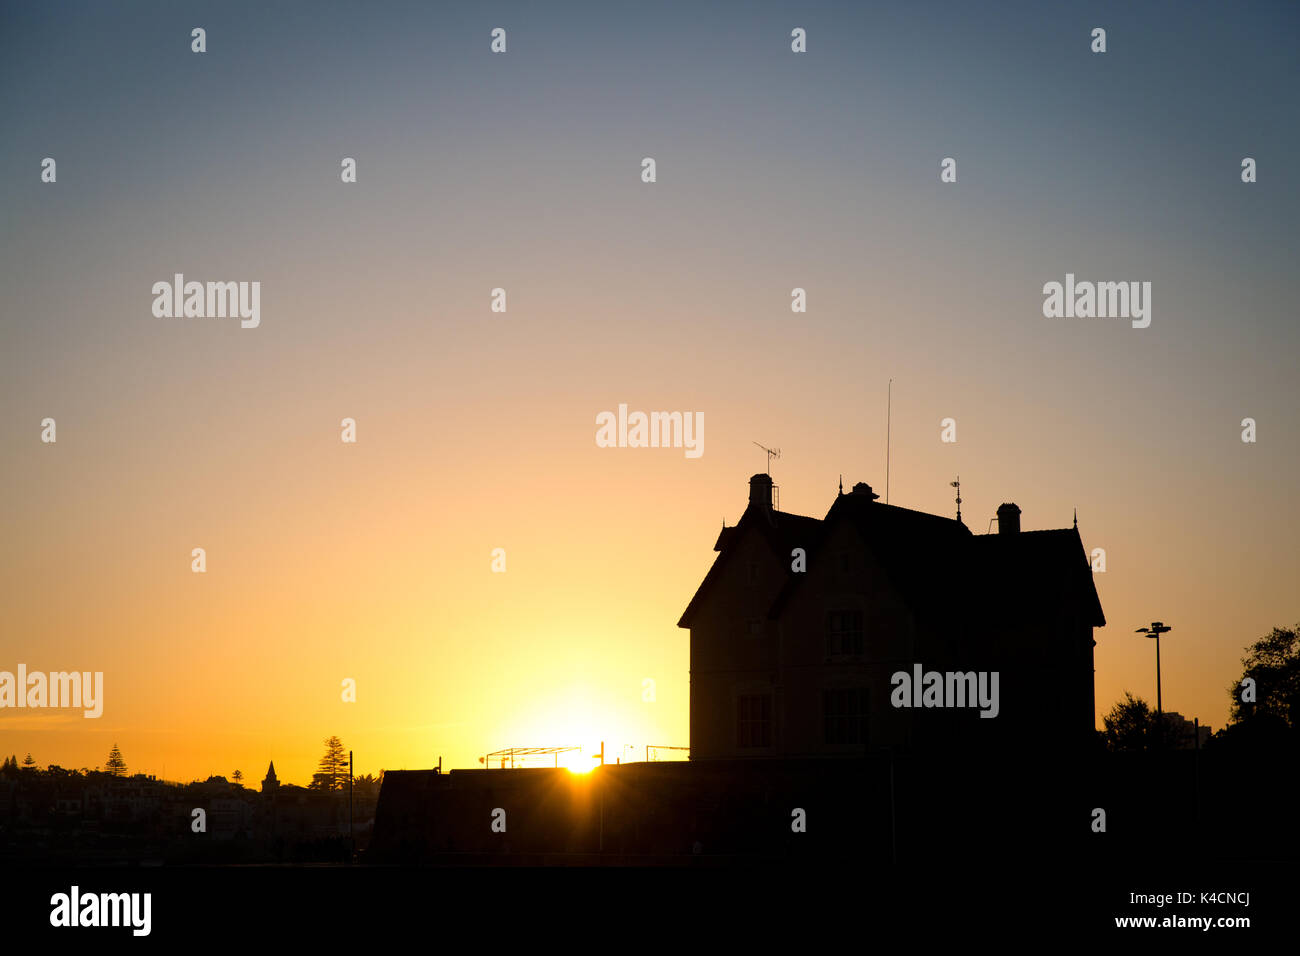 Casa antes del sol naciente Foto de stock